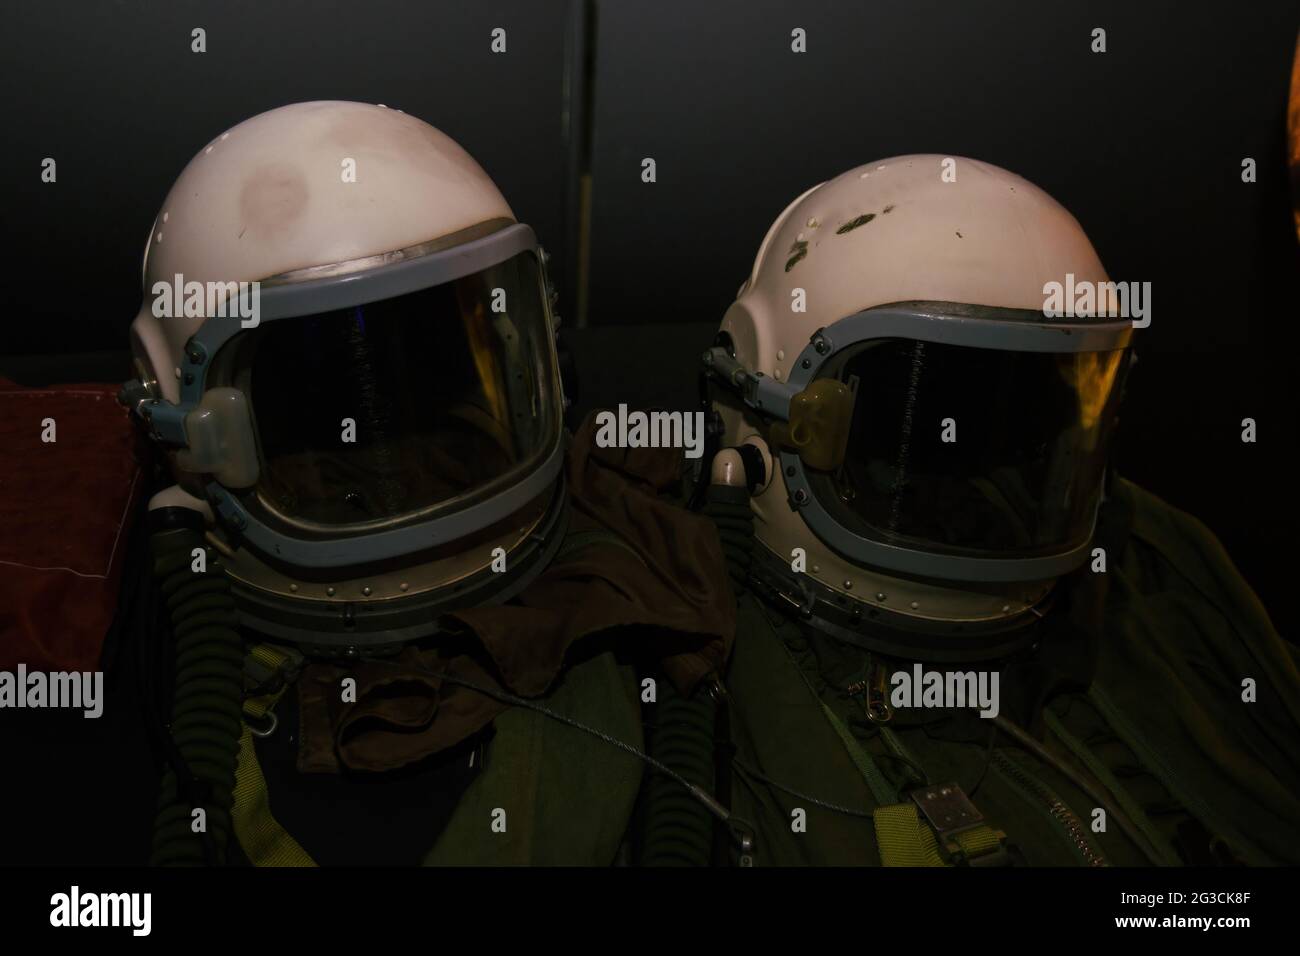 Alte grüne Astronauten-Anzüge mit weißen Helmen. Stockfoto